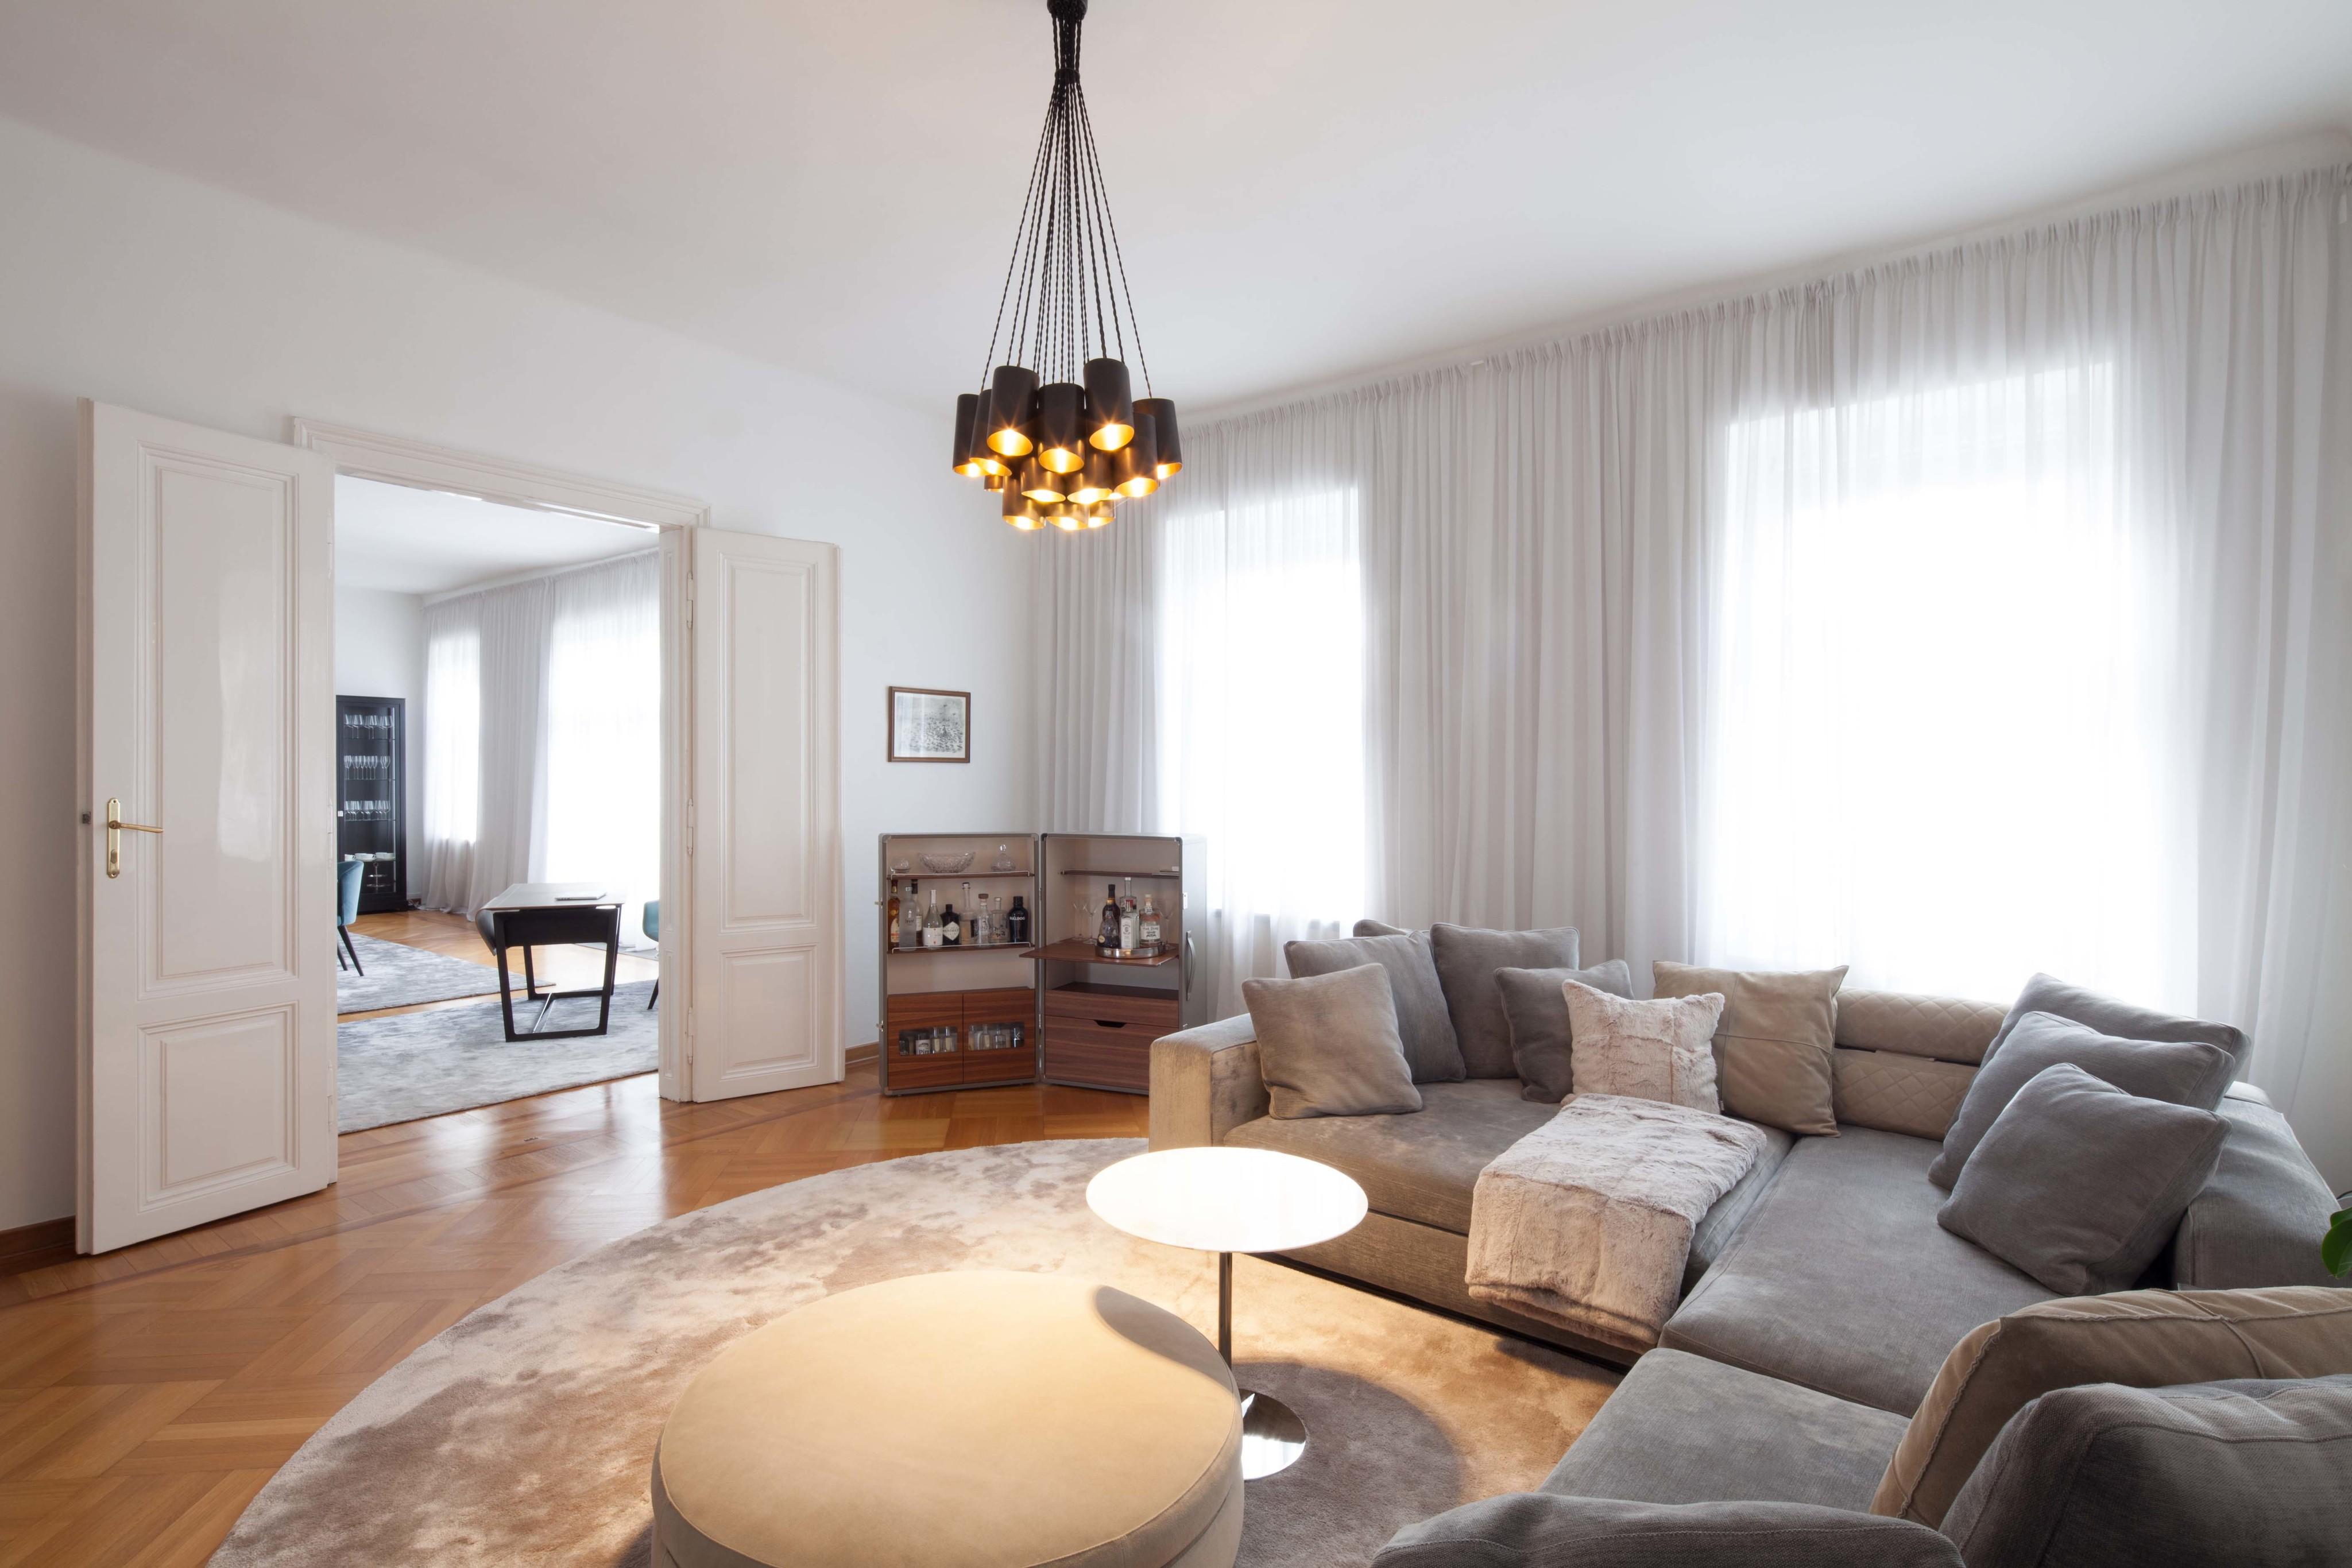 Apartment M
Wien
#interiordesign #wohnzimmer #innenarchitektur 
©destilat/Harald Hatschenberger